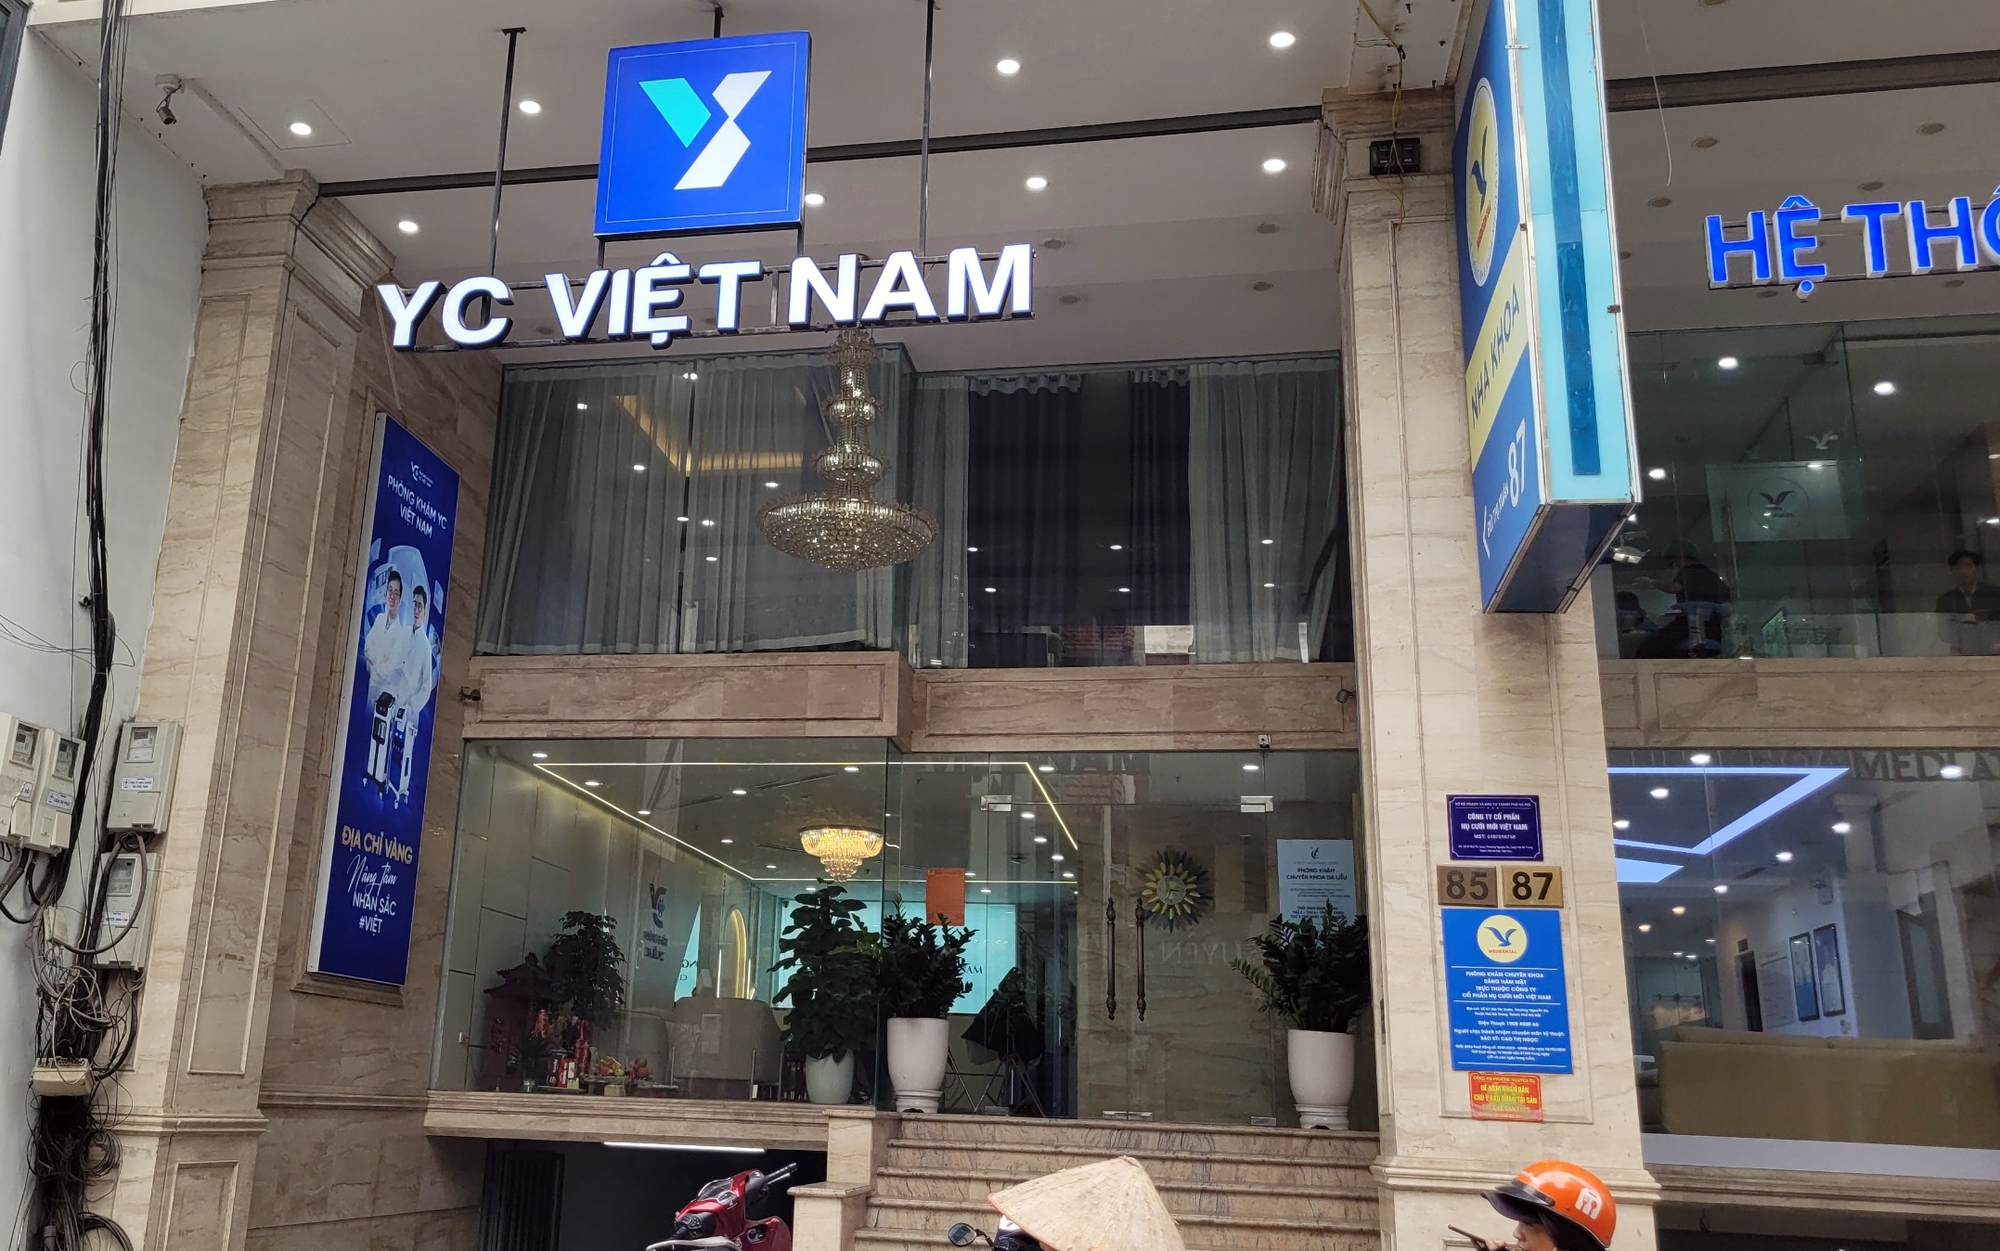 Thảm họa làm đẹp khi đến nhầm chỗ (bài 3): Tốn 260 triệu đồng điều trị ở "phòng khám" YC Việt Nam mà da vẫn xỉn màu, tăng sắc tố